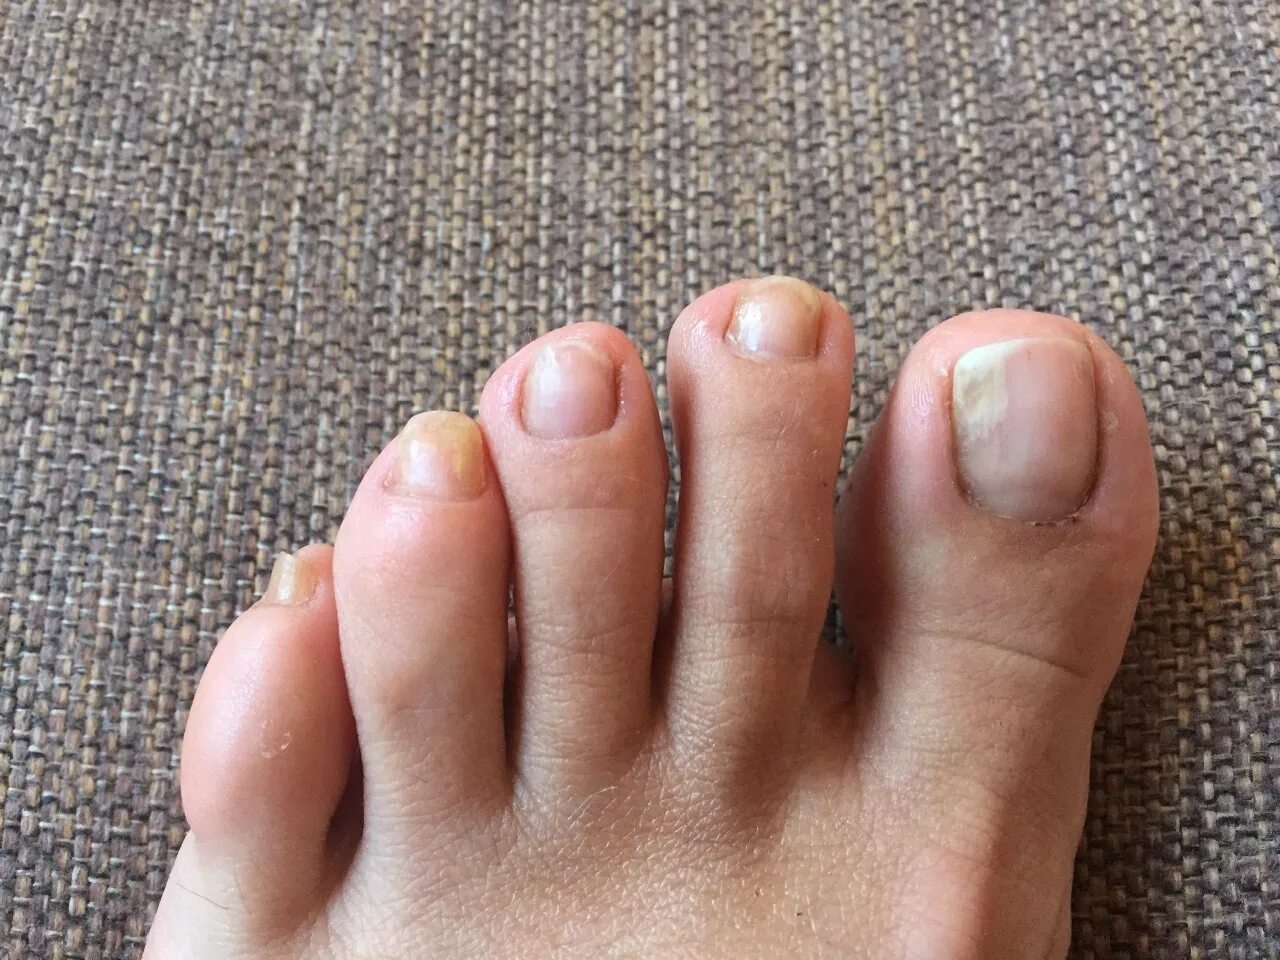 Педикюр грибковых ногтей. Здоровые ногти на ногах. Ктолщение ногтей натногах.